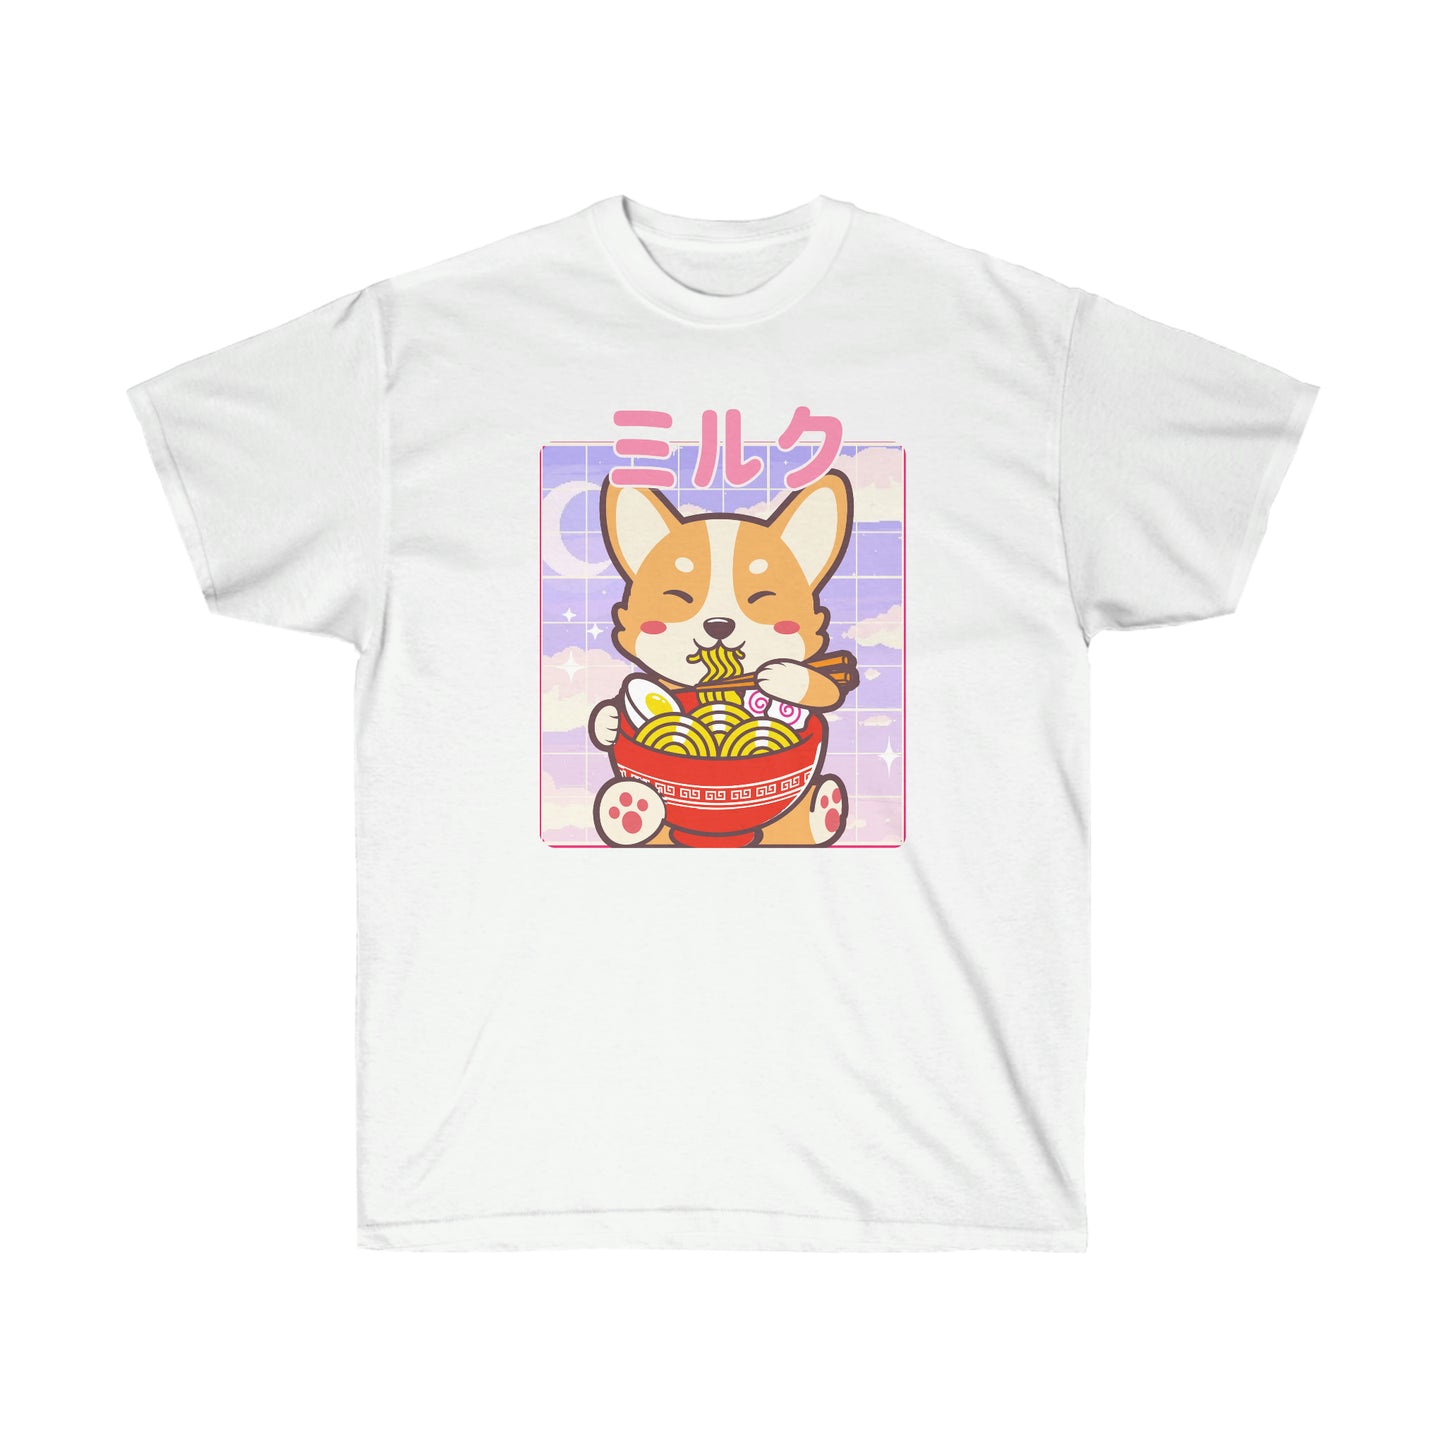 Shiba Inu shirt Ramen Cute Kawaii Boba Tea Cute Chibi Japanese Yume Kawaii Boba Tea Kawaii clothing T-shirt clothing pocket